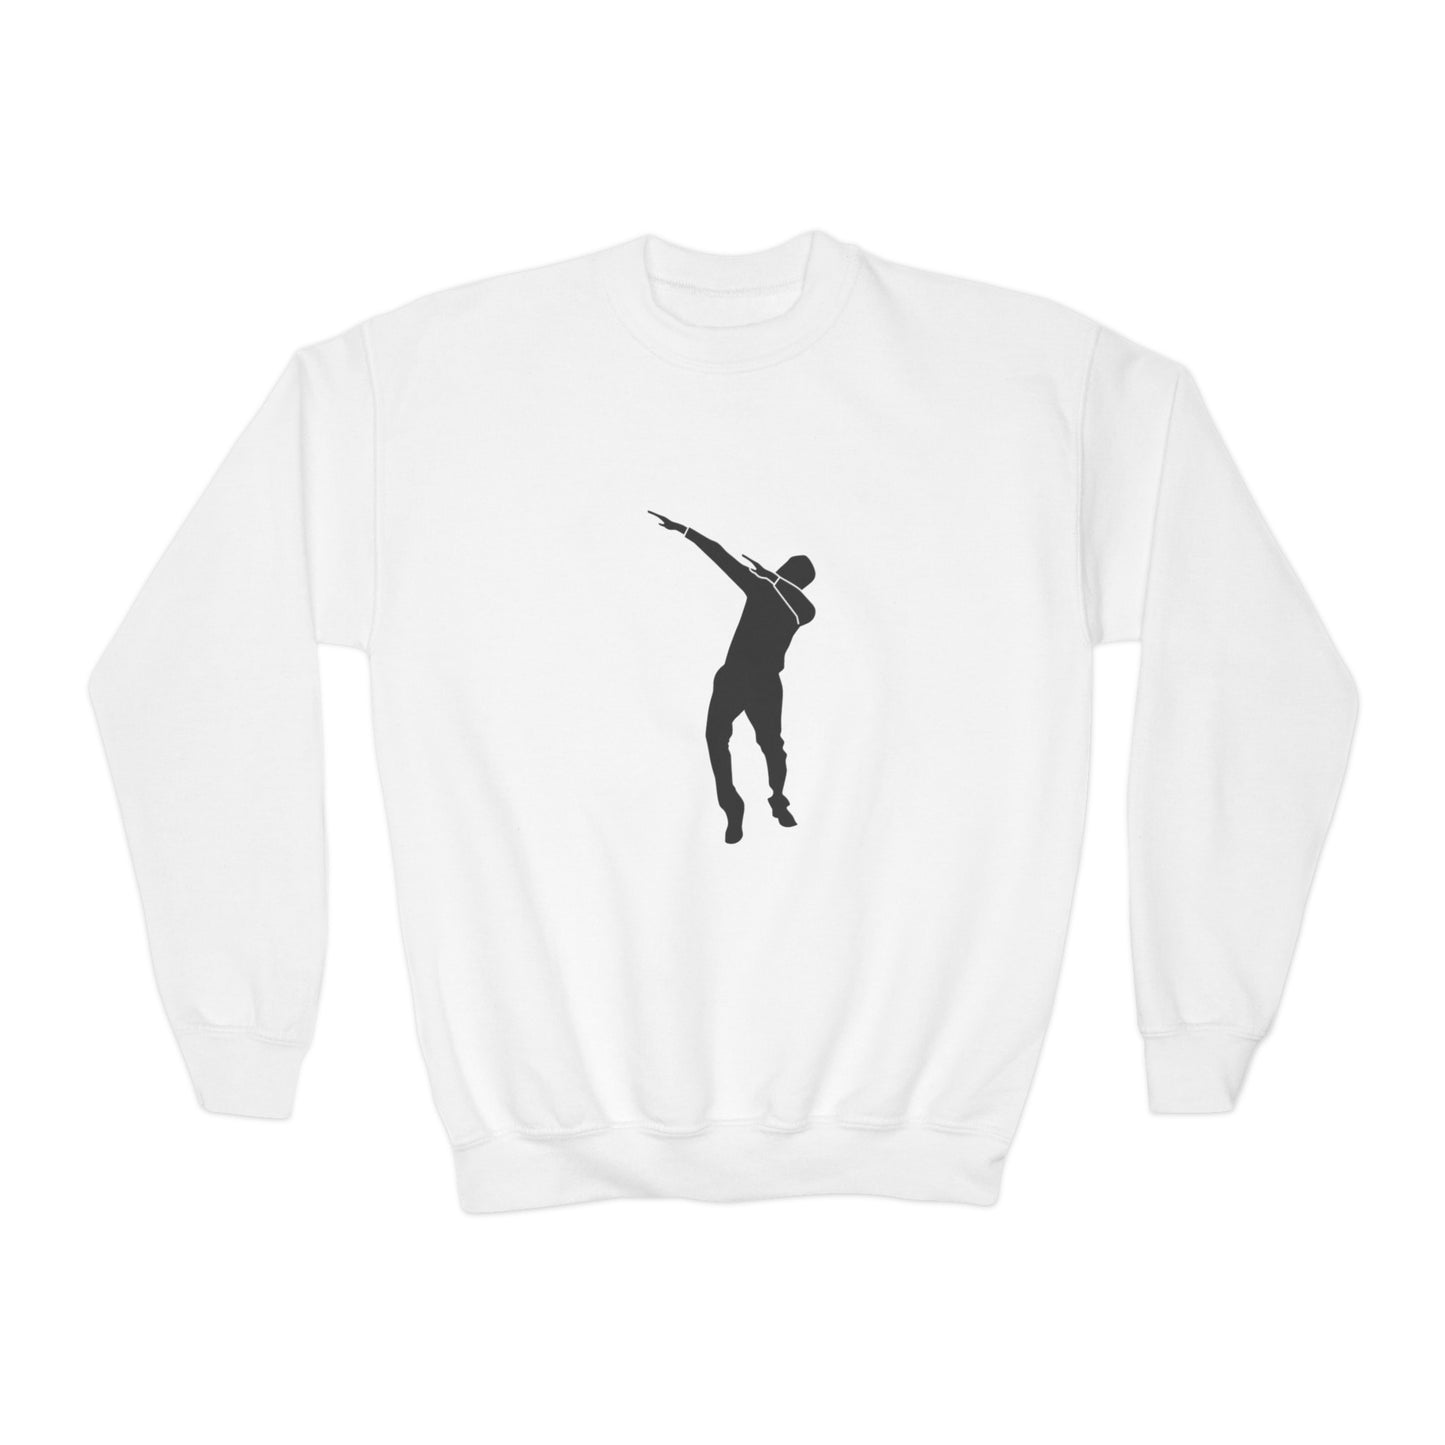 Youth Crewneck Sweatshirt: Dance